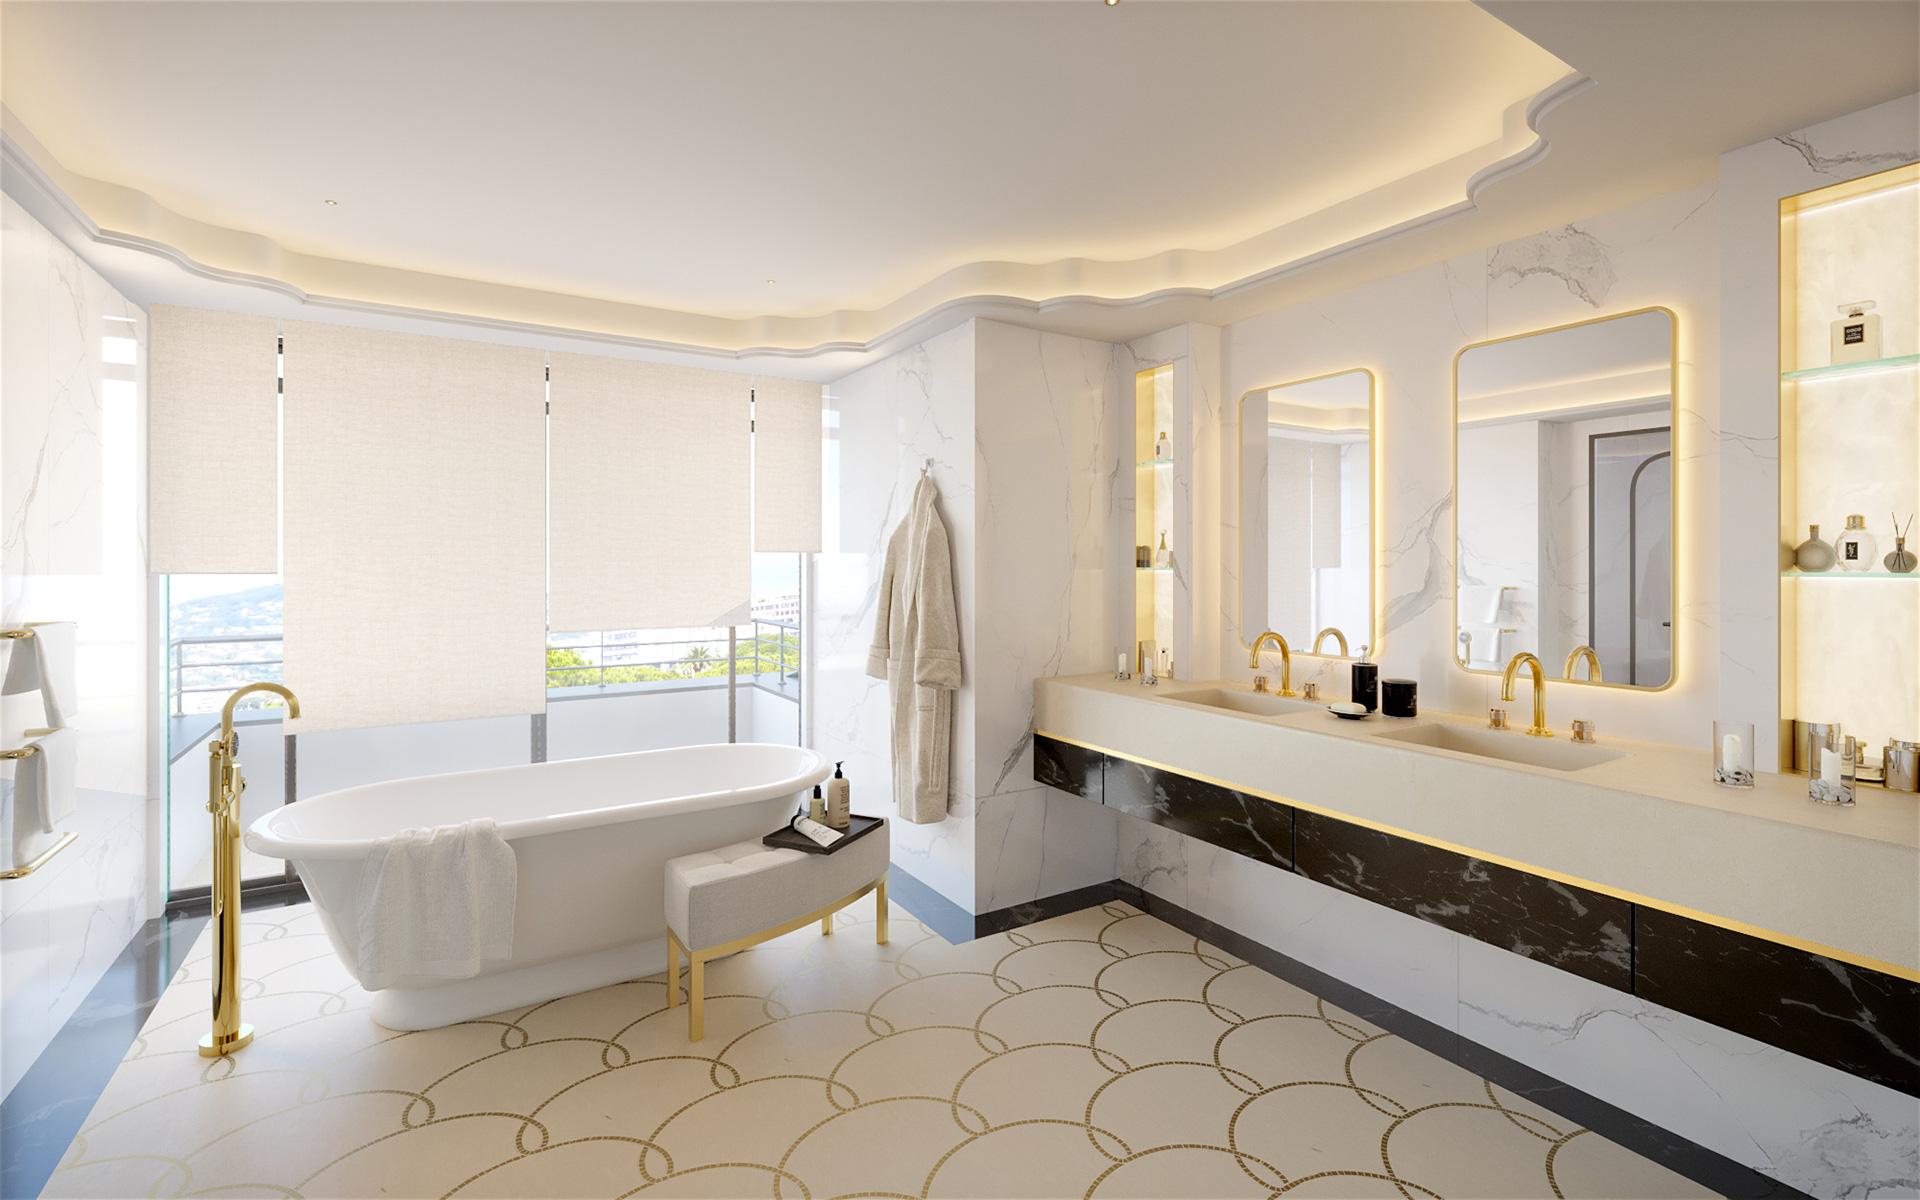 Vue en perspective 3D d'une salle de bain dans une villa à Cannes